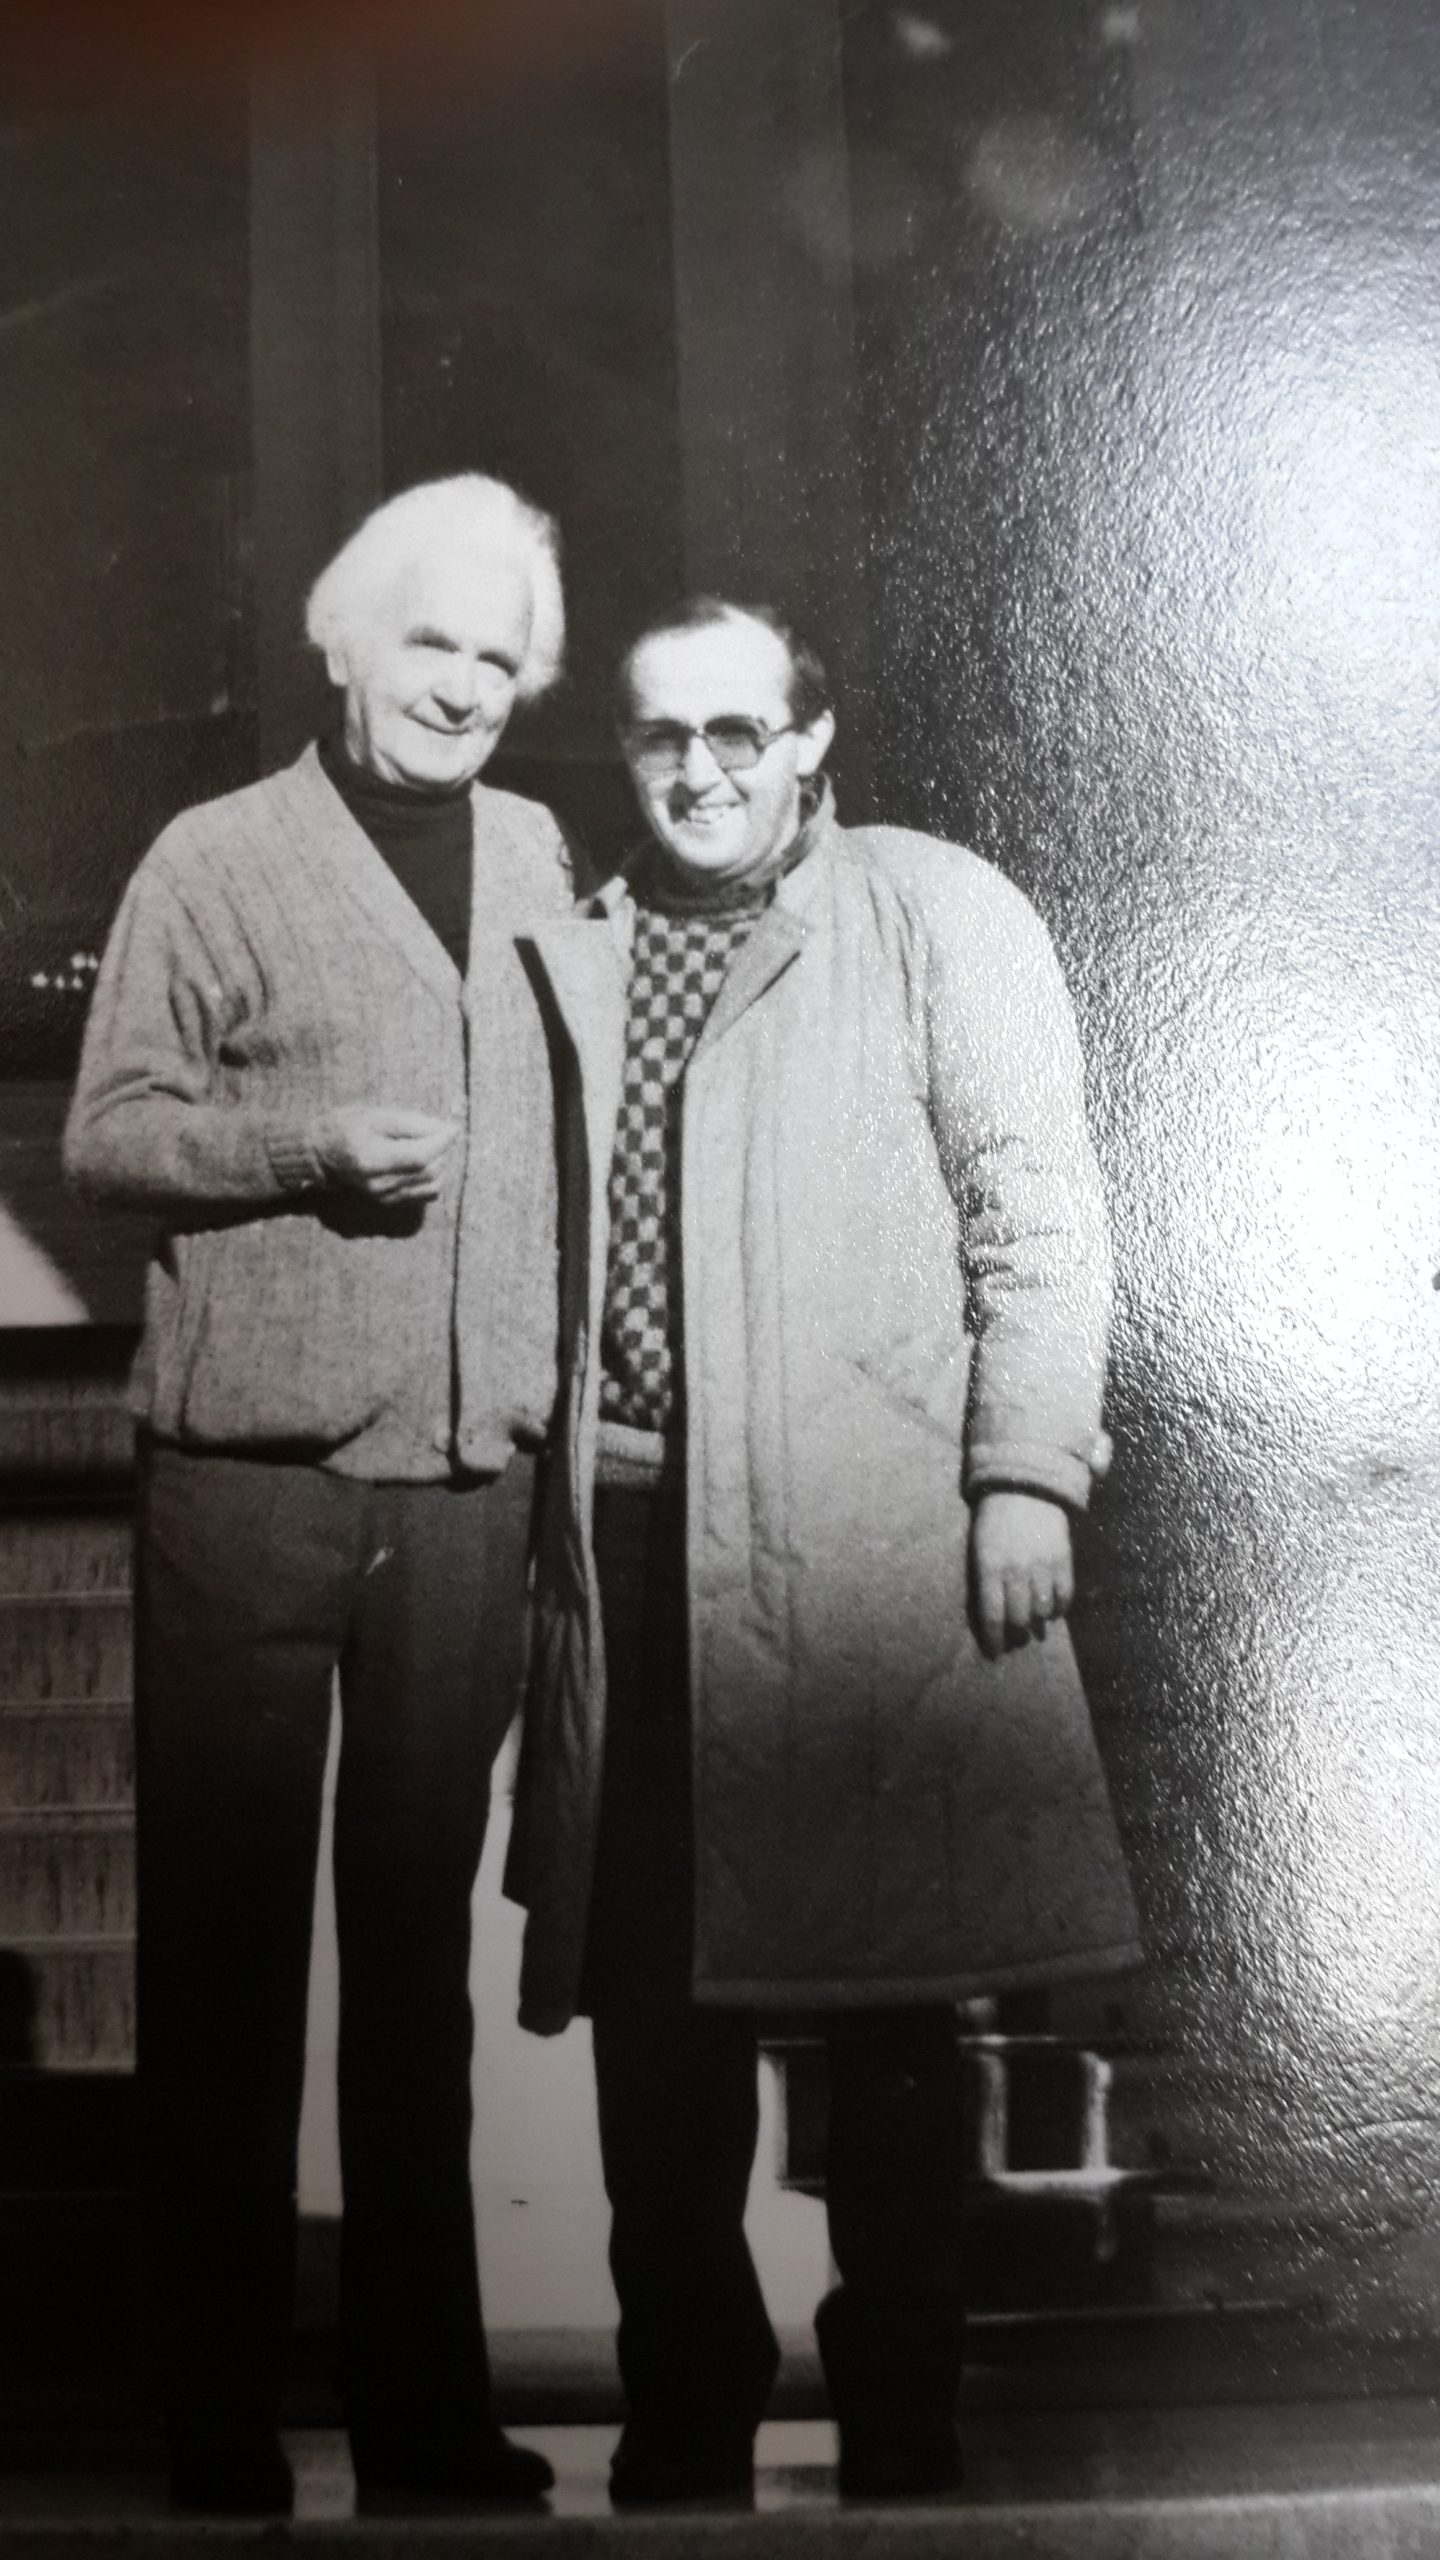 Rafet Rudi with composer Mihovil Logar, Opati 1989